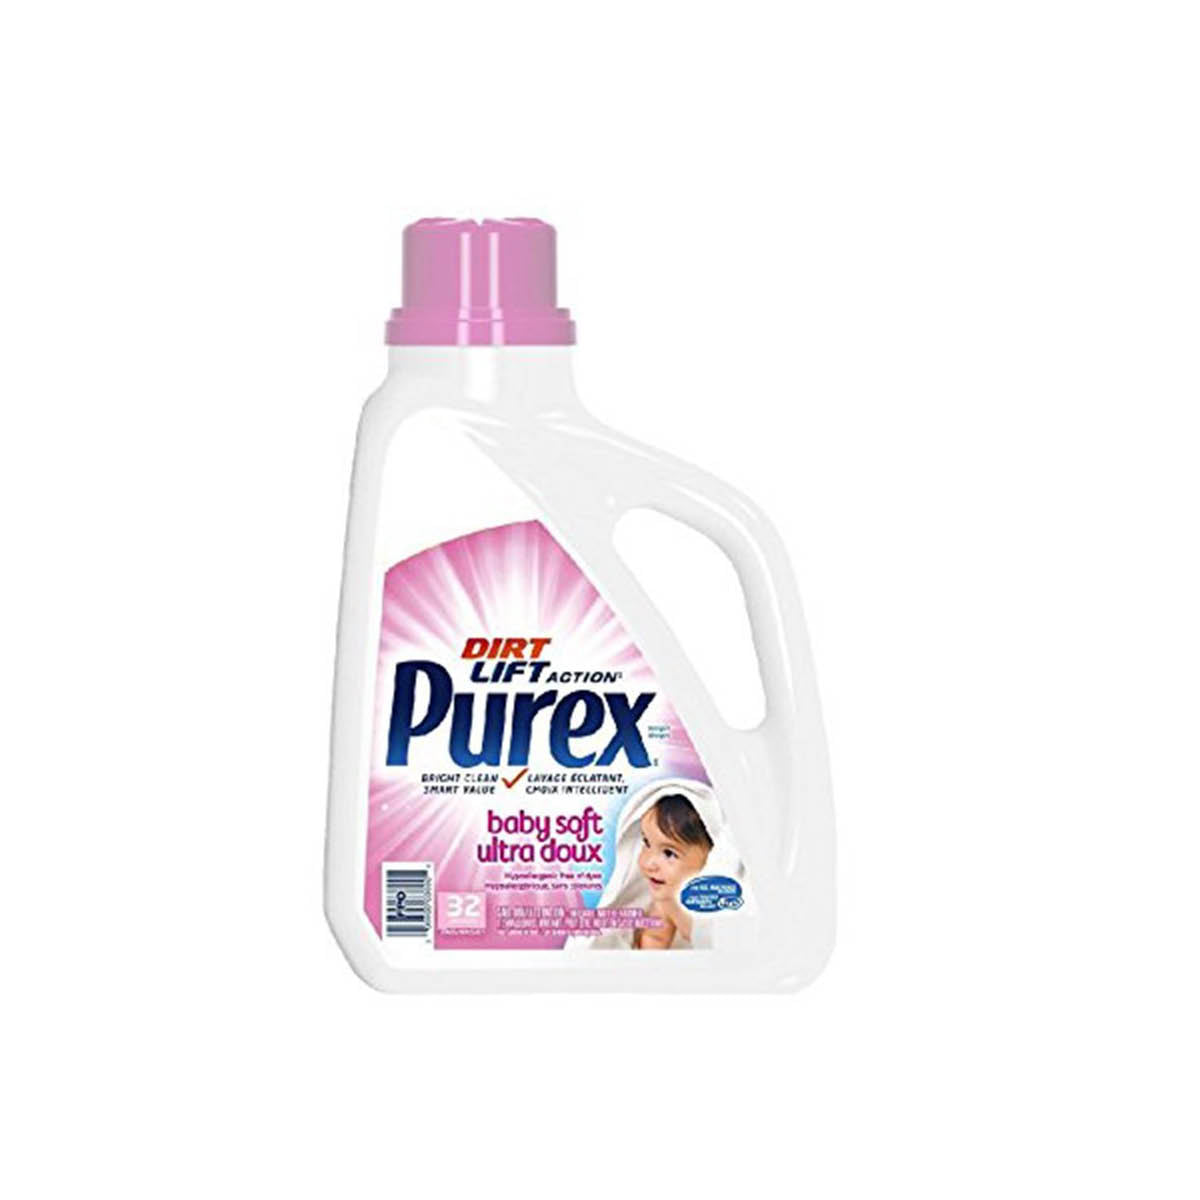 Purex Baby Soft Hypoallergenic Detergent, 1.47 L